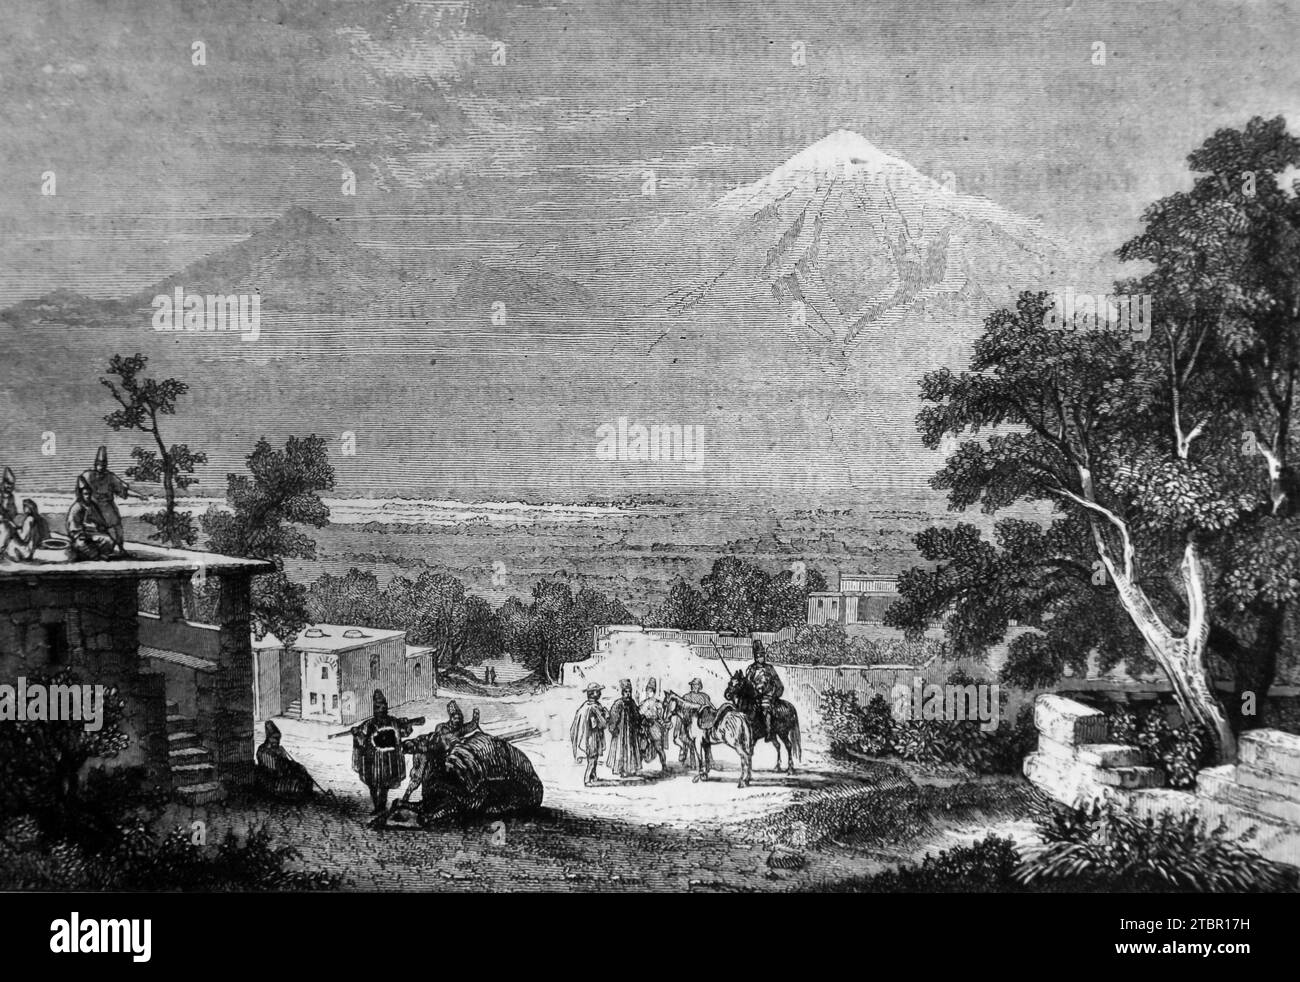 Illustration der Berge von Ararat (Little Ararat und Greater Ararat) zusammengebaute ruhende Vulkane in der Türkei, die in der Bibel als ruhende Vulkane beschrieben werden Stockfoto